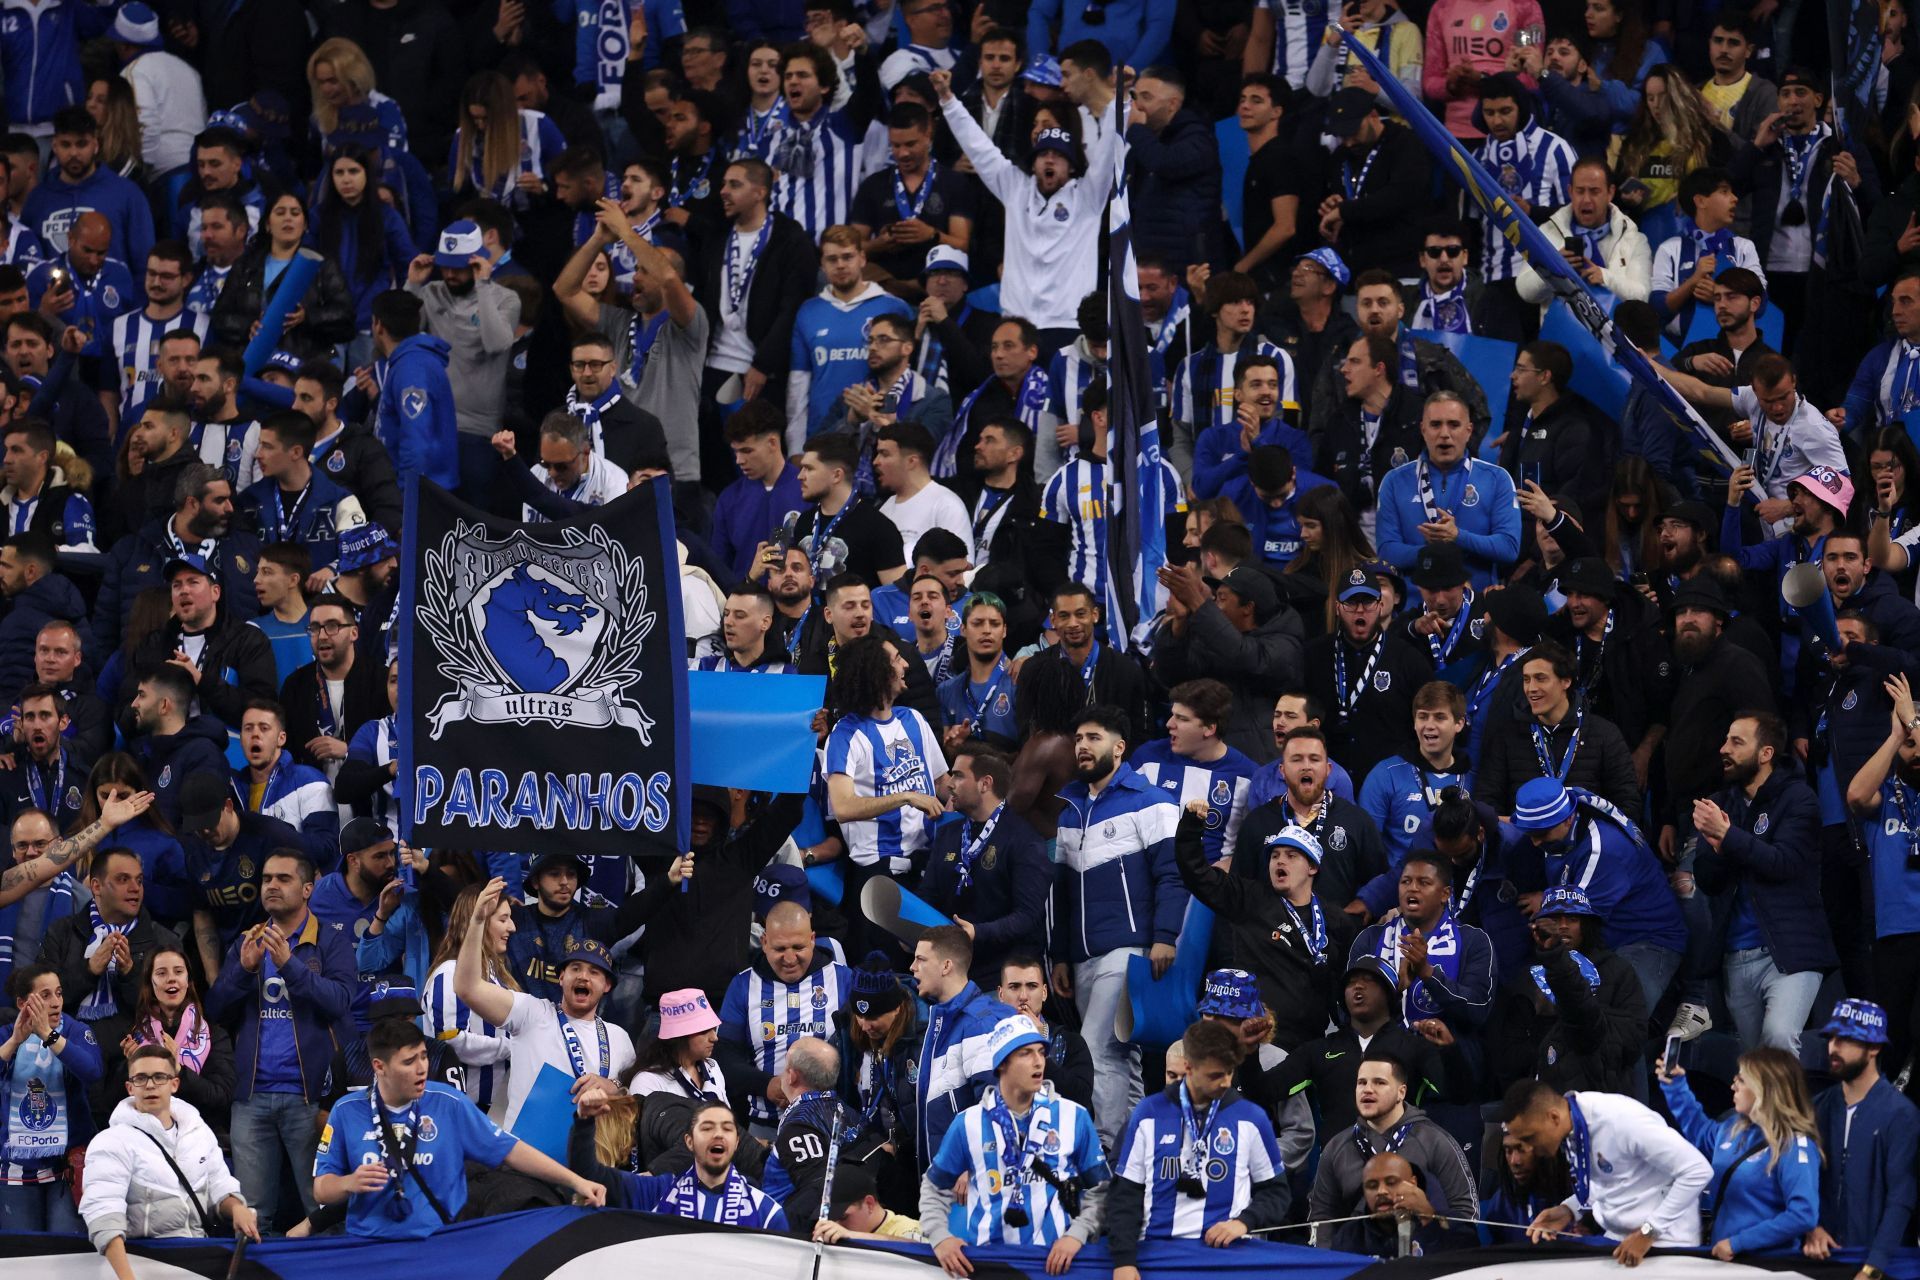 FC Porto v FC Internazionale: Round of 16 Second Leg - UEFA Champions League